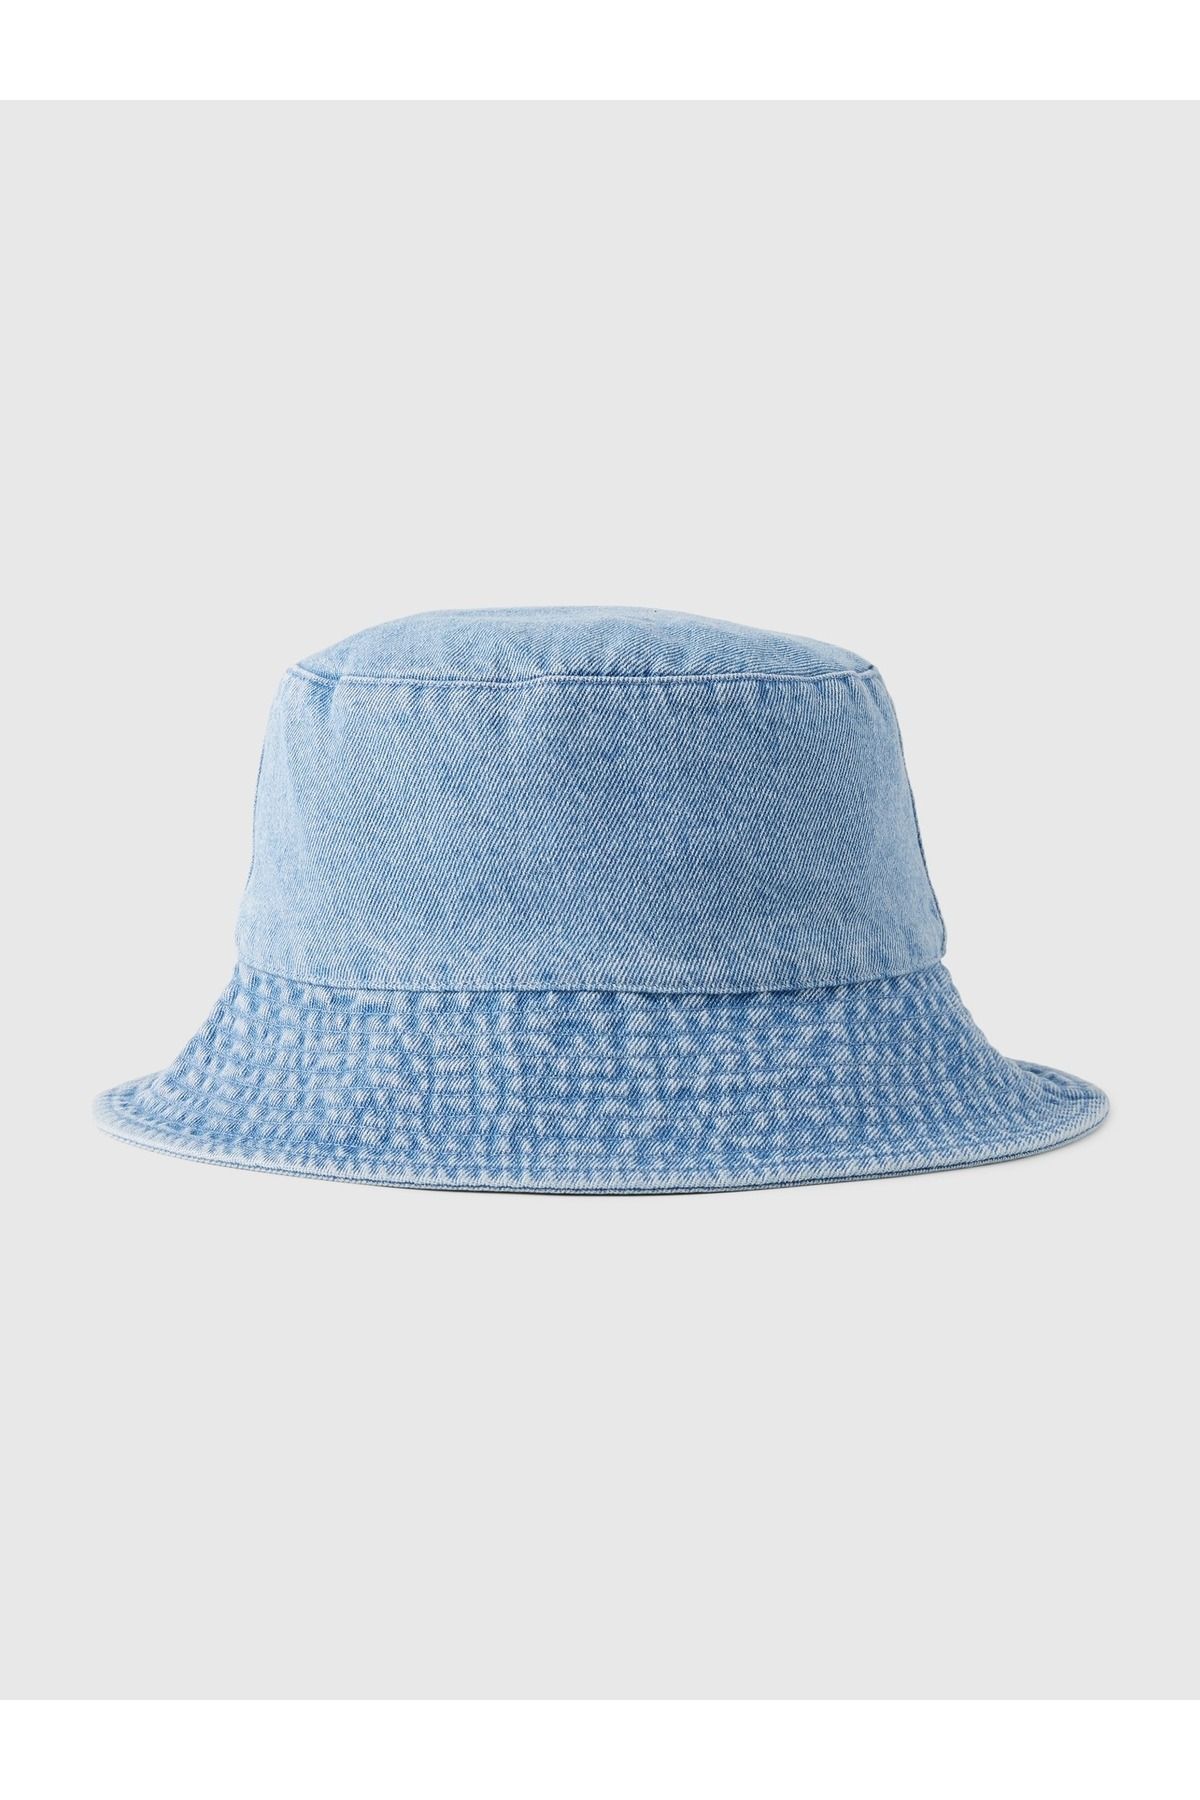 GAP Kız Çocuk Açık Mavi Denim Bucket Şapka